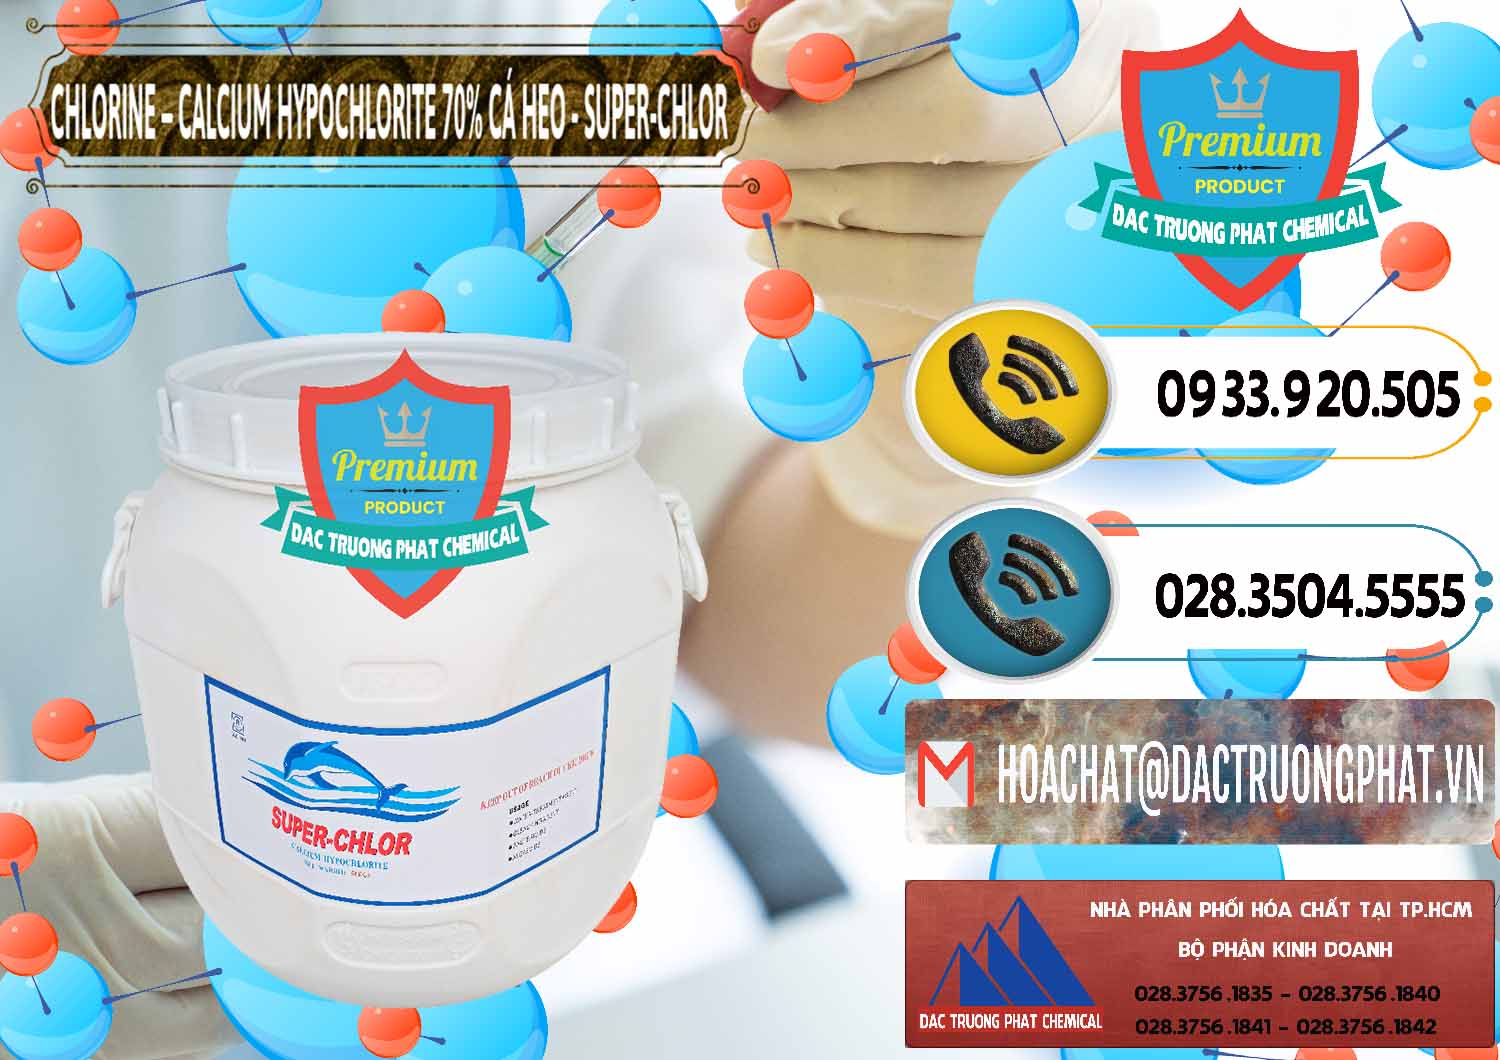 Đơn vị bán - cung cấp Clorin - Chlorine Cá Heo 70% Super Chlor Trung Quốc China - 0058 - Nơi cung cấp và phân phối hóa chất tại TP.HCM - hoachatdetnhuom.vn